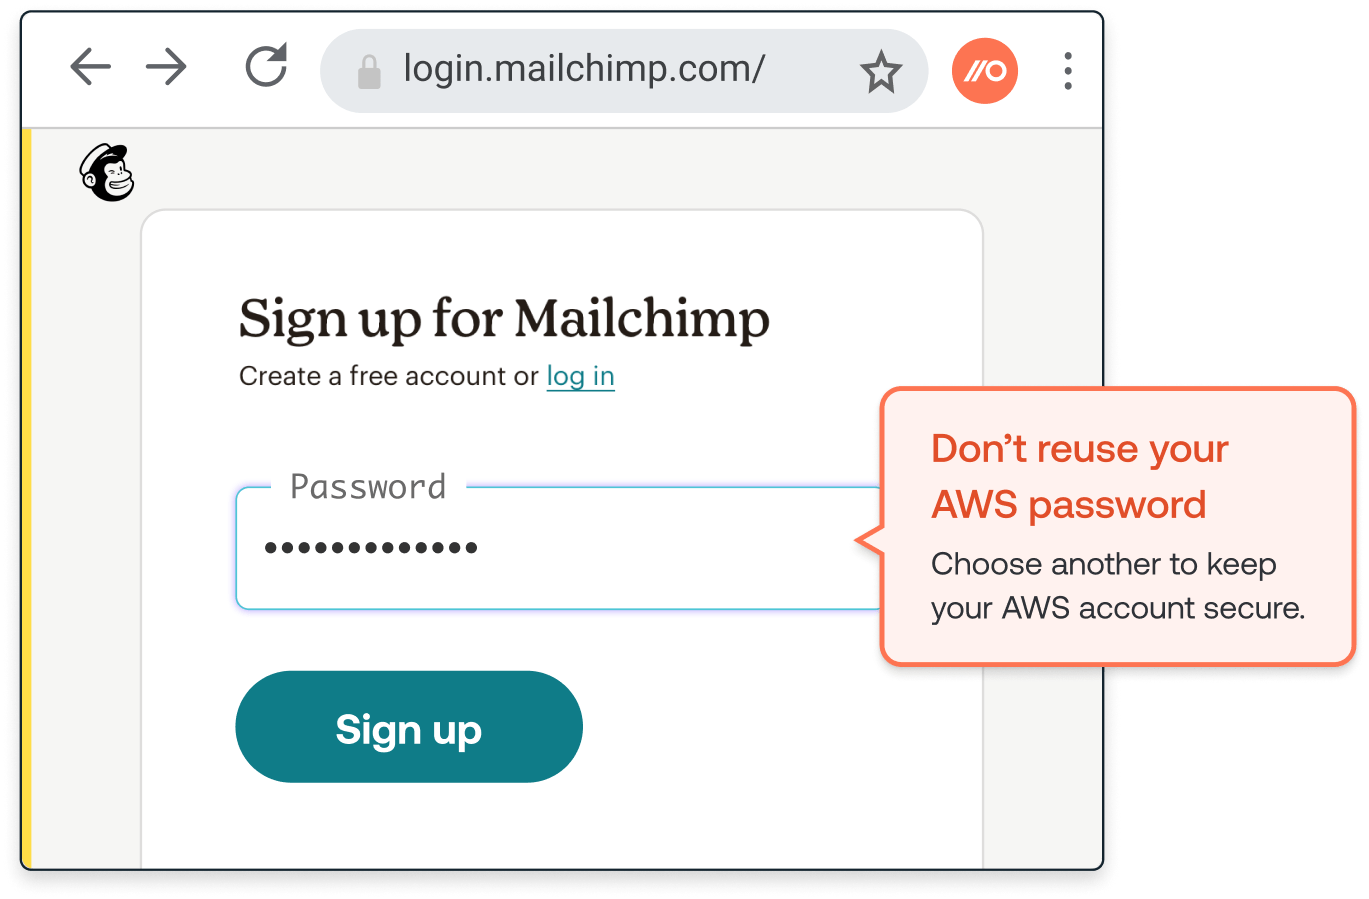 Mailchimp and AWS password